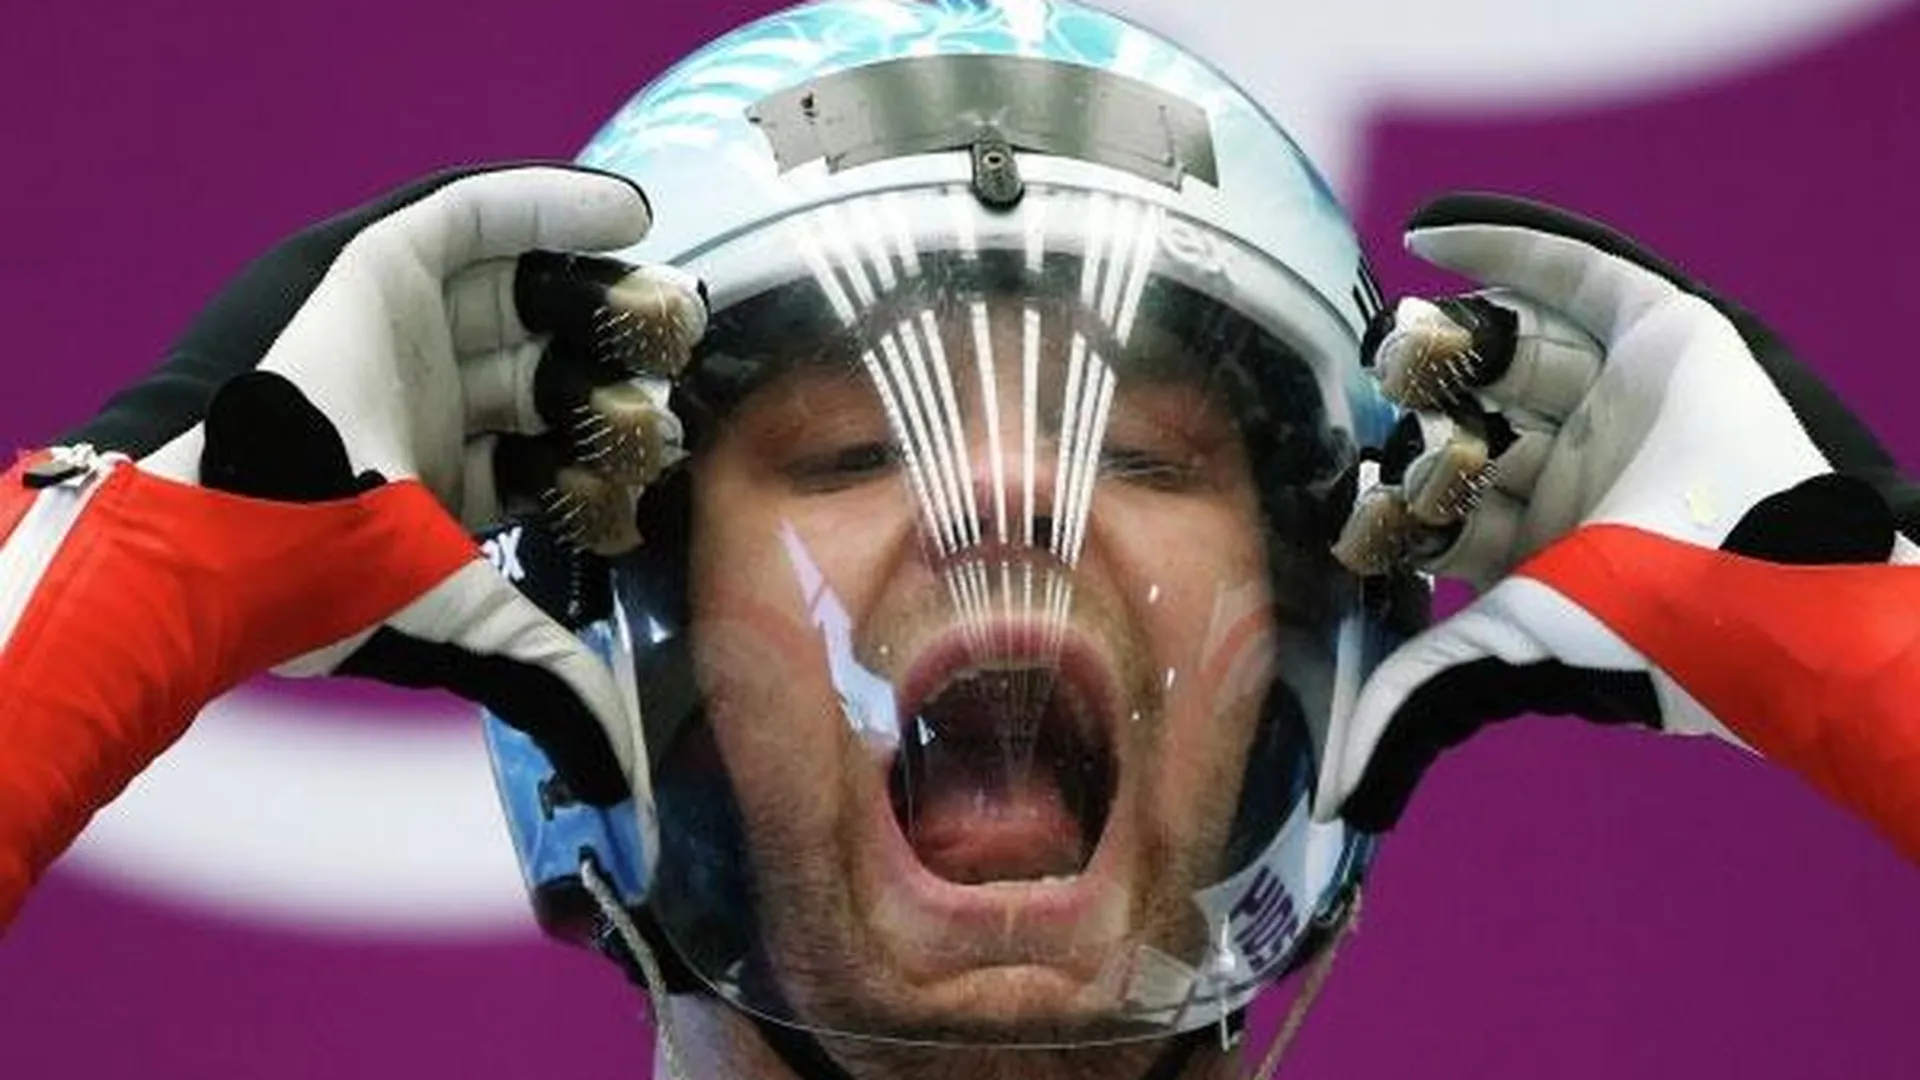 Подмосковный саночник победил на этапе Кубка мира в Уистлере